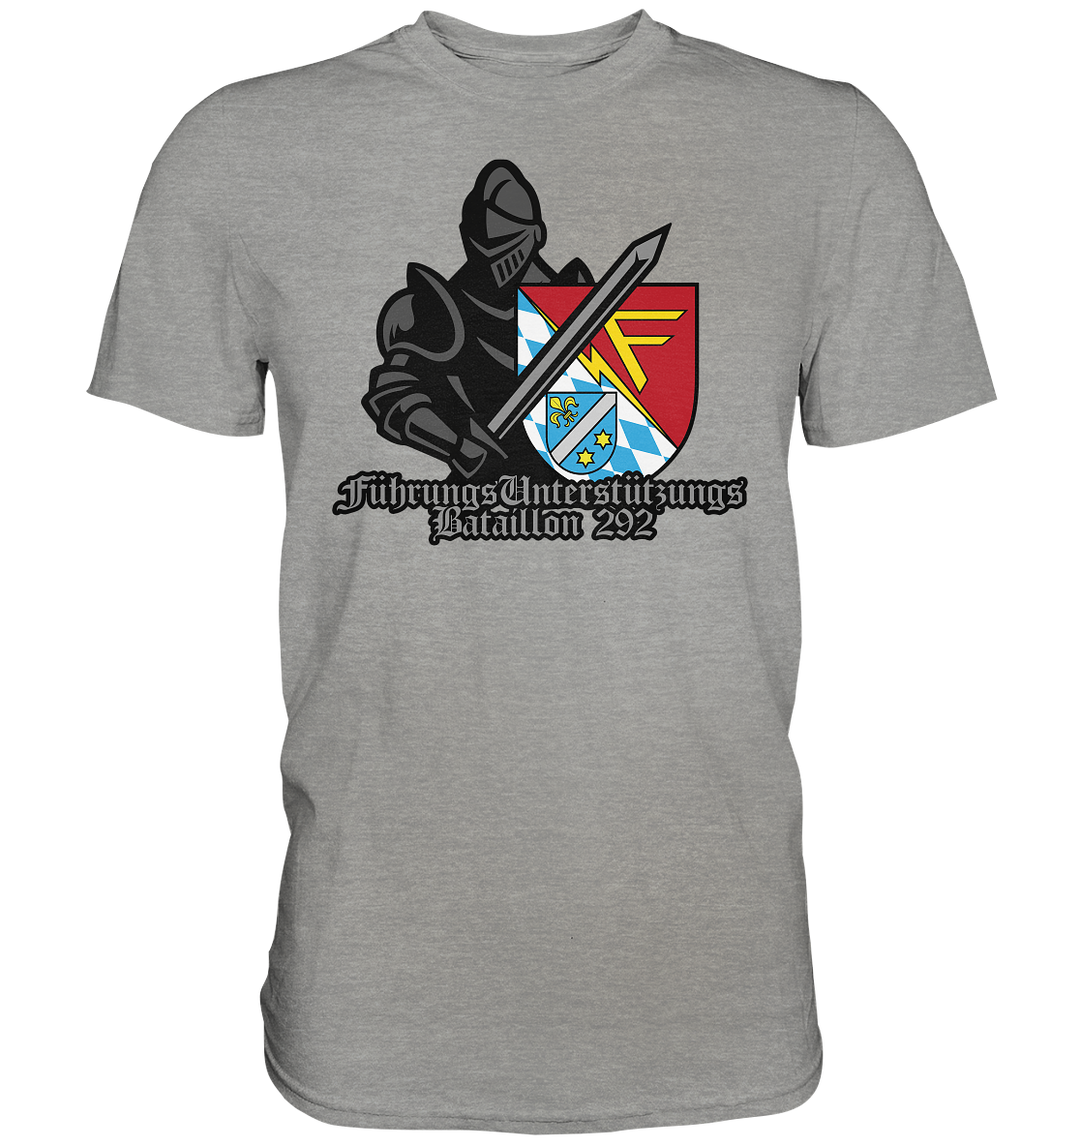 "Führungsunterstützungsbataillon 292 - Ritter" - Premium Shirt